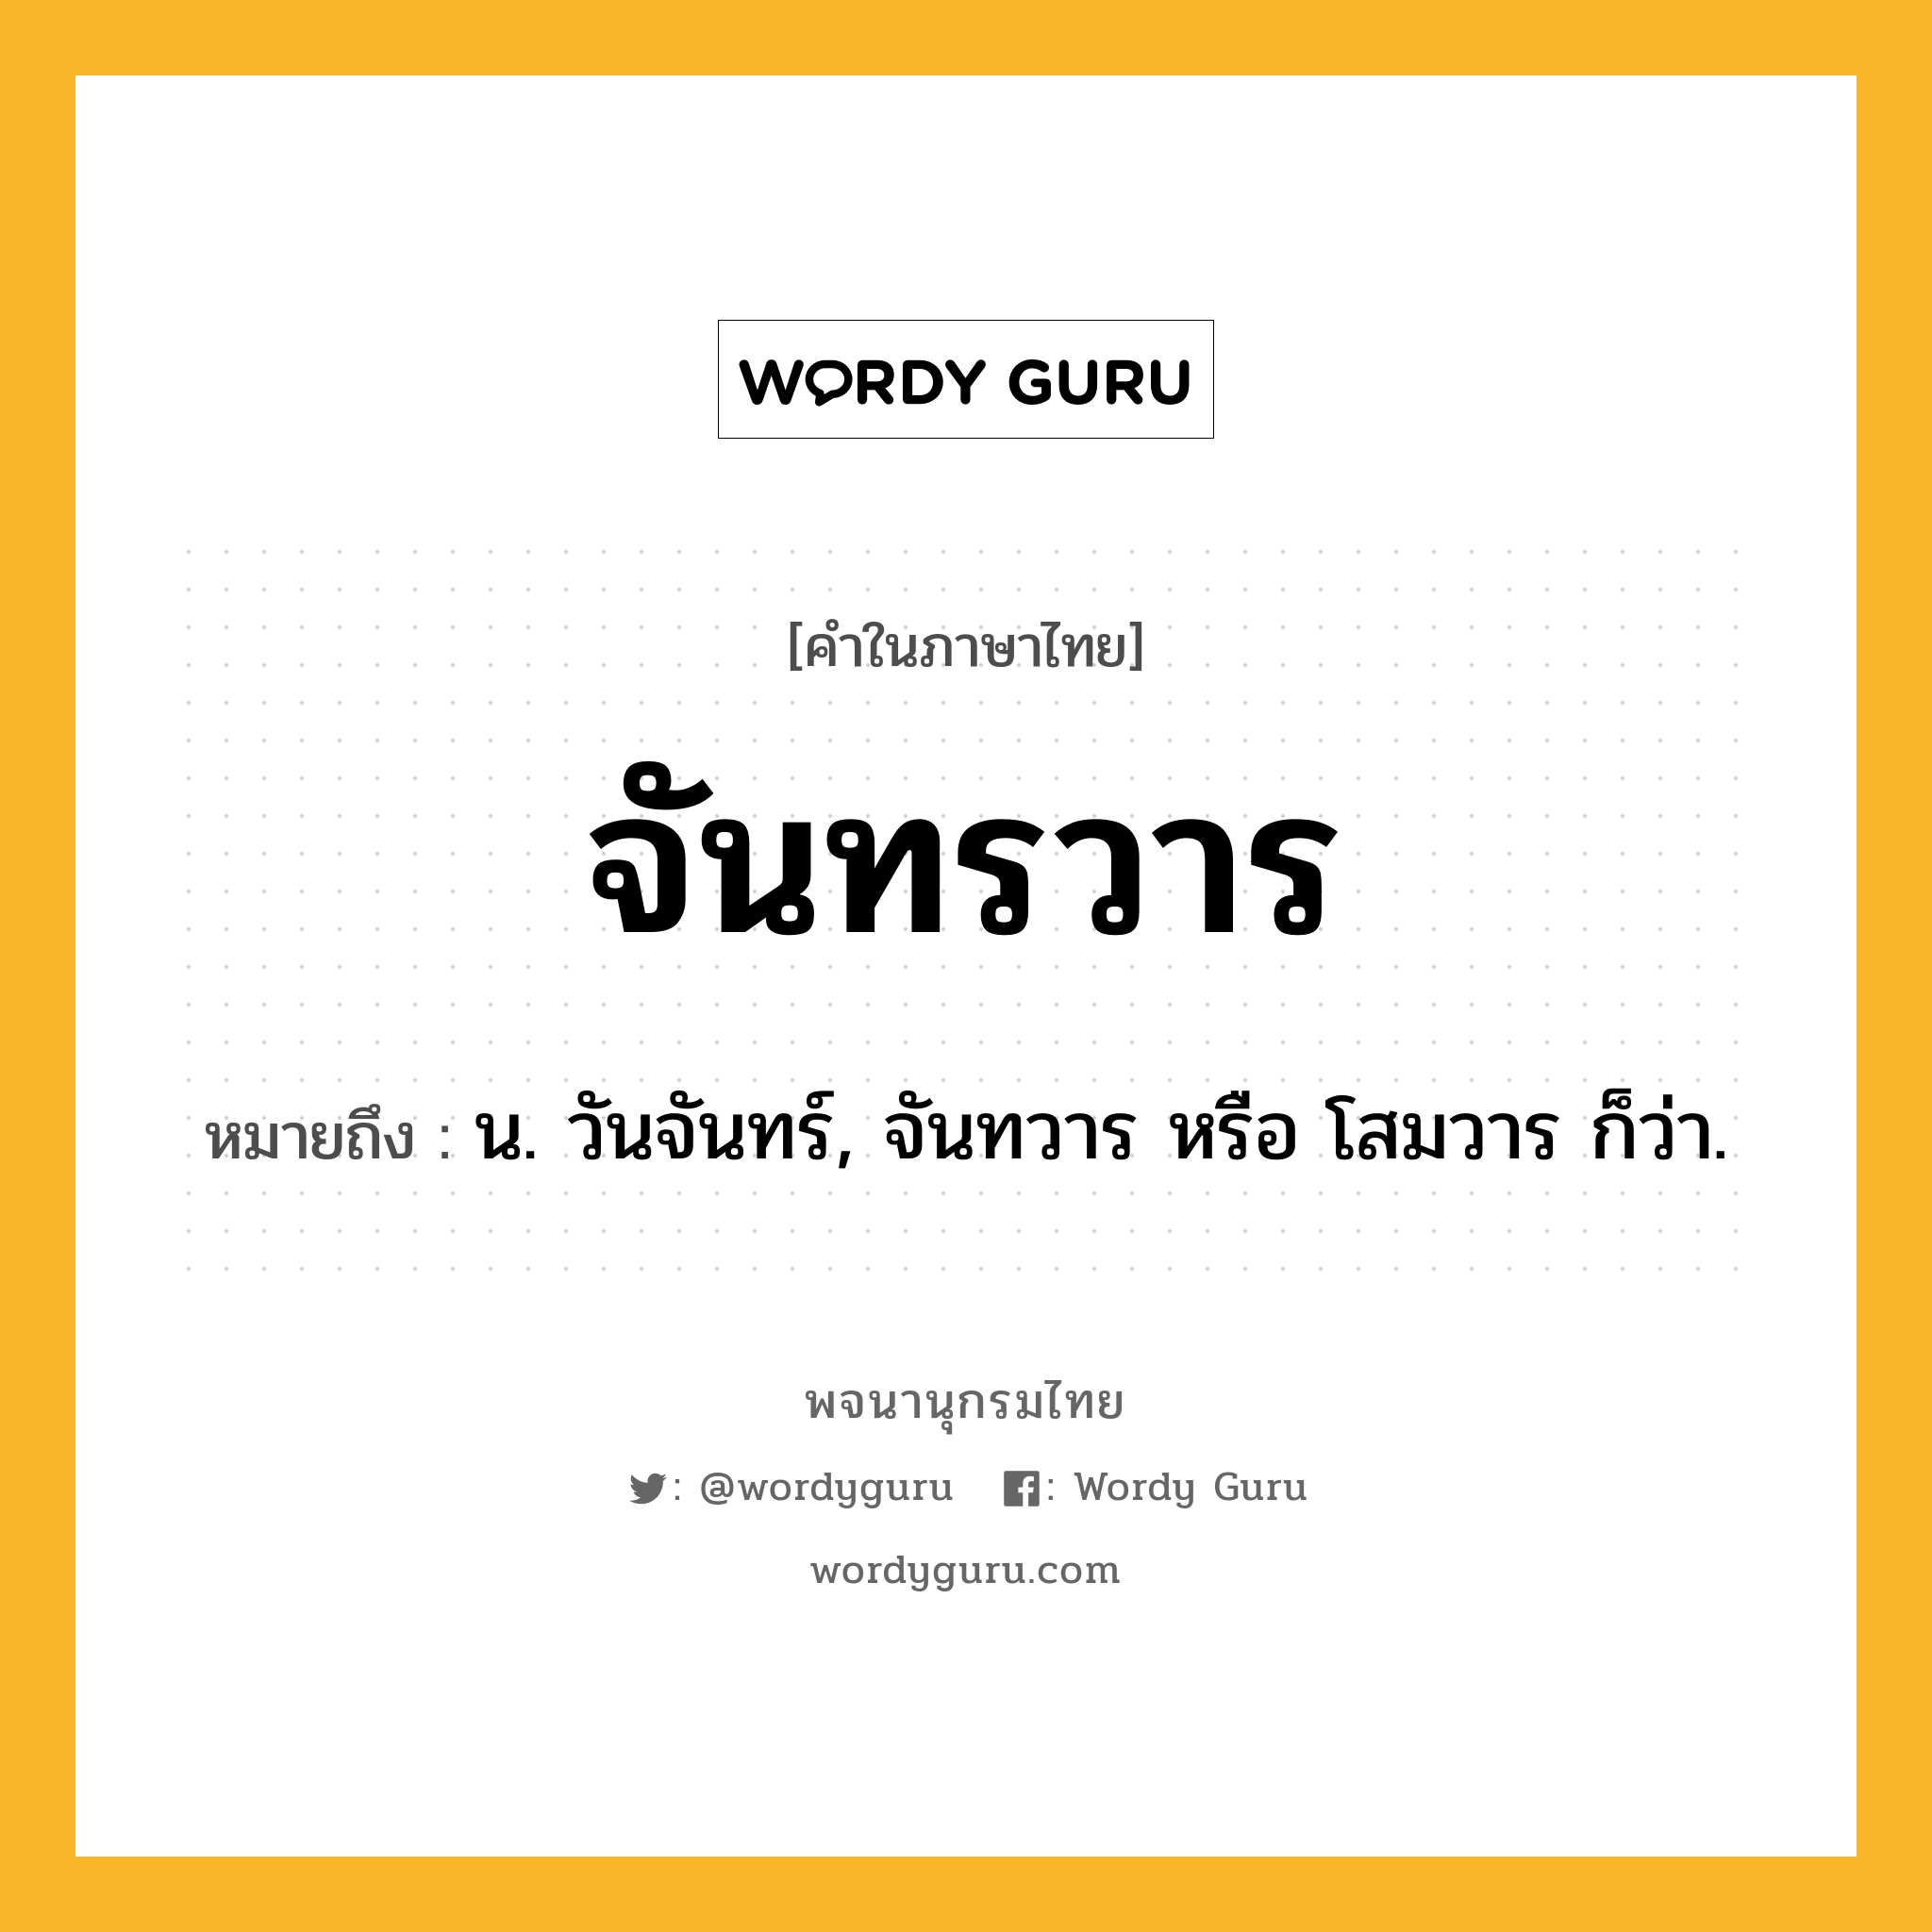 จันทรวาร ความหมาย หมายถึงอะไร?, คำในภาษาไทย จันทรวาร หมายถึง น. วันจันทร์, จันทวาร หรือ โสมวาร ก็ว่า.